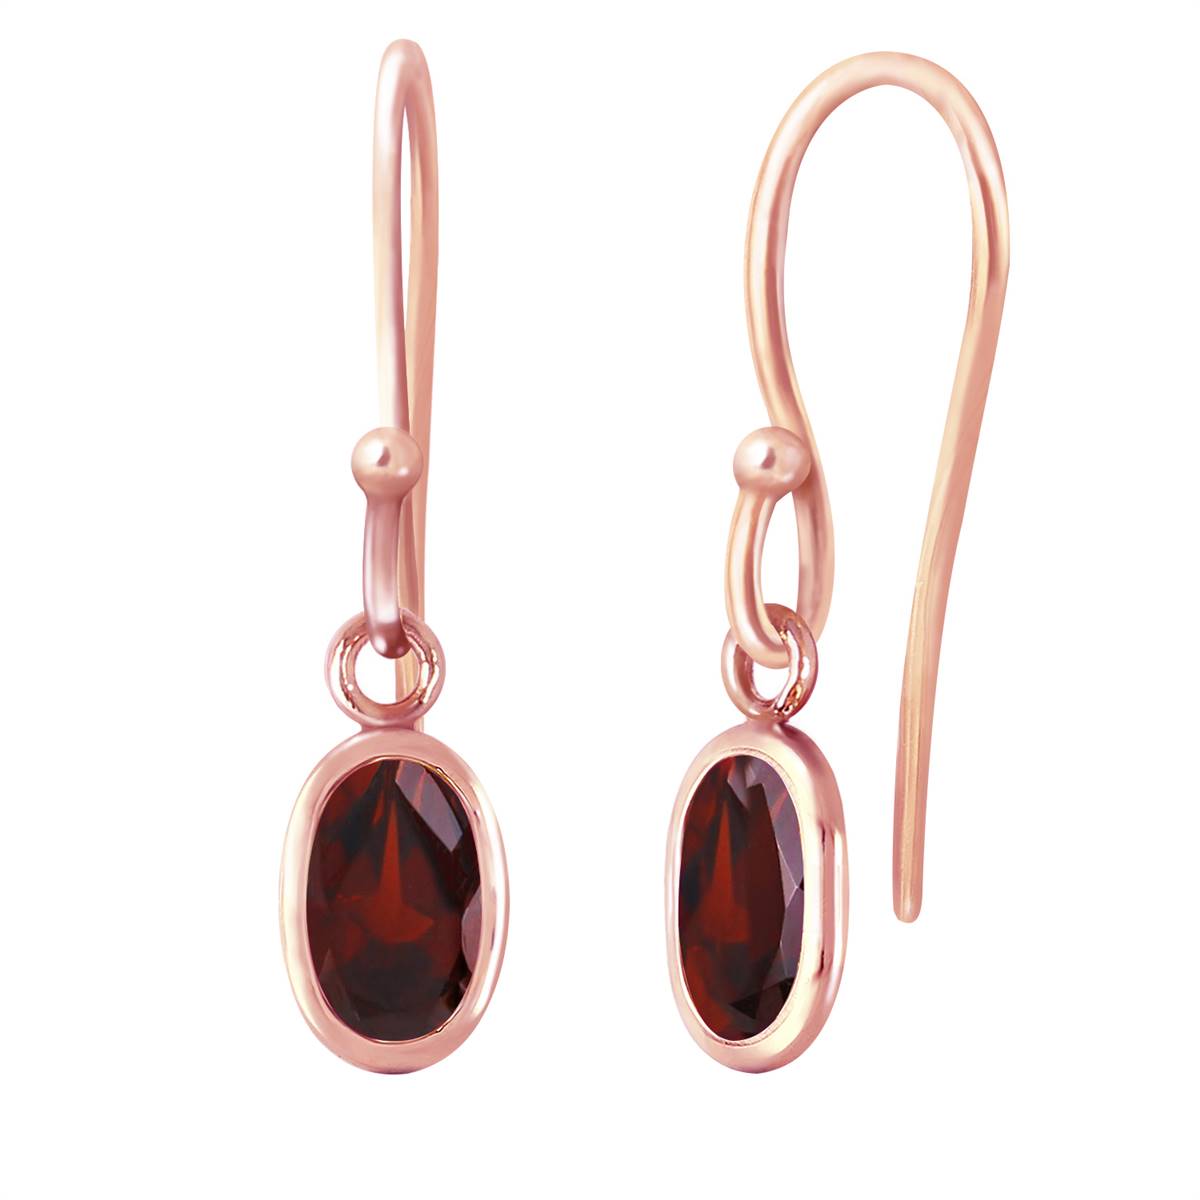 14K Solid Rose Gold Fish Hook Earrings w/ Garnets